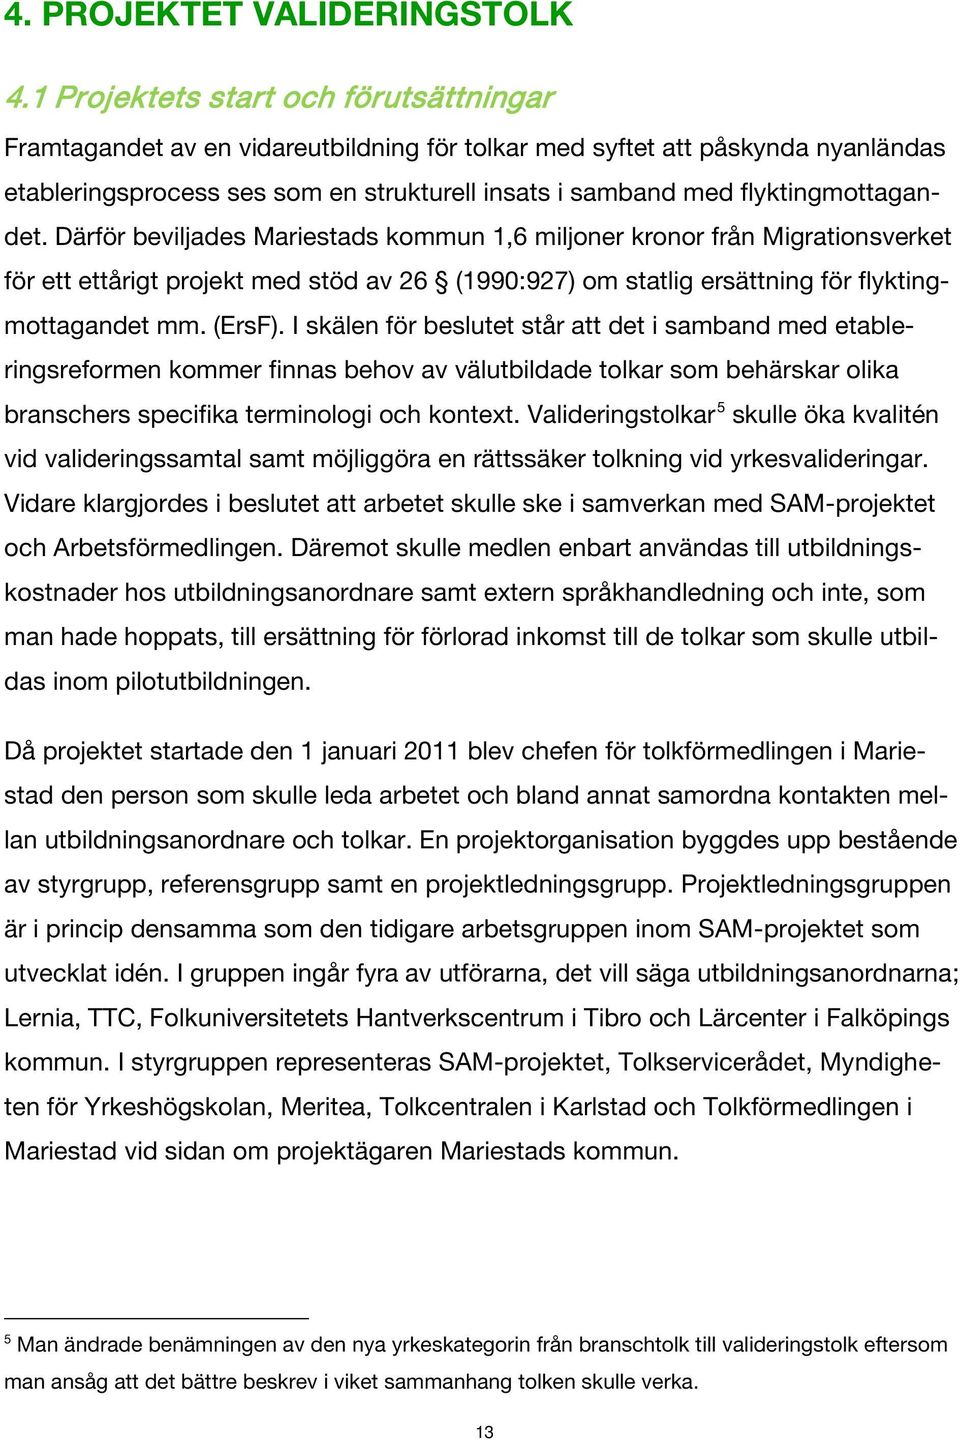 flyktingmottagandet. Därför beviljades Mariestads kommun 1,6 miljoner kronor från Migrationsverket för ett ettårigt projekt med stöd av 26 (1990:927) om statlig ersättning för flyktingmottagandet mm.